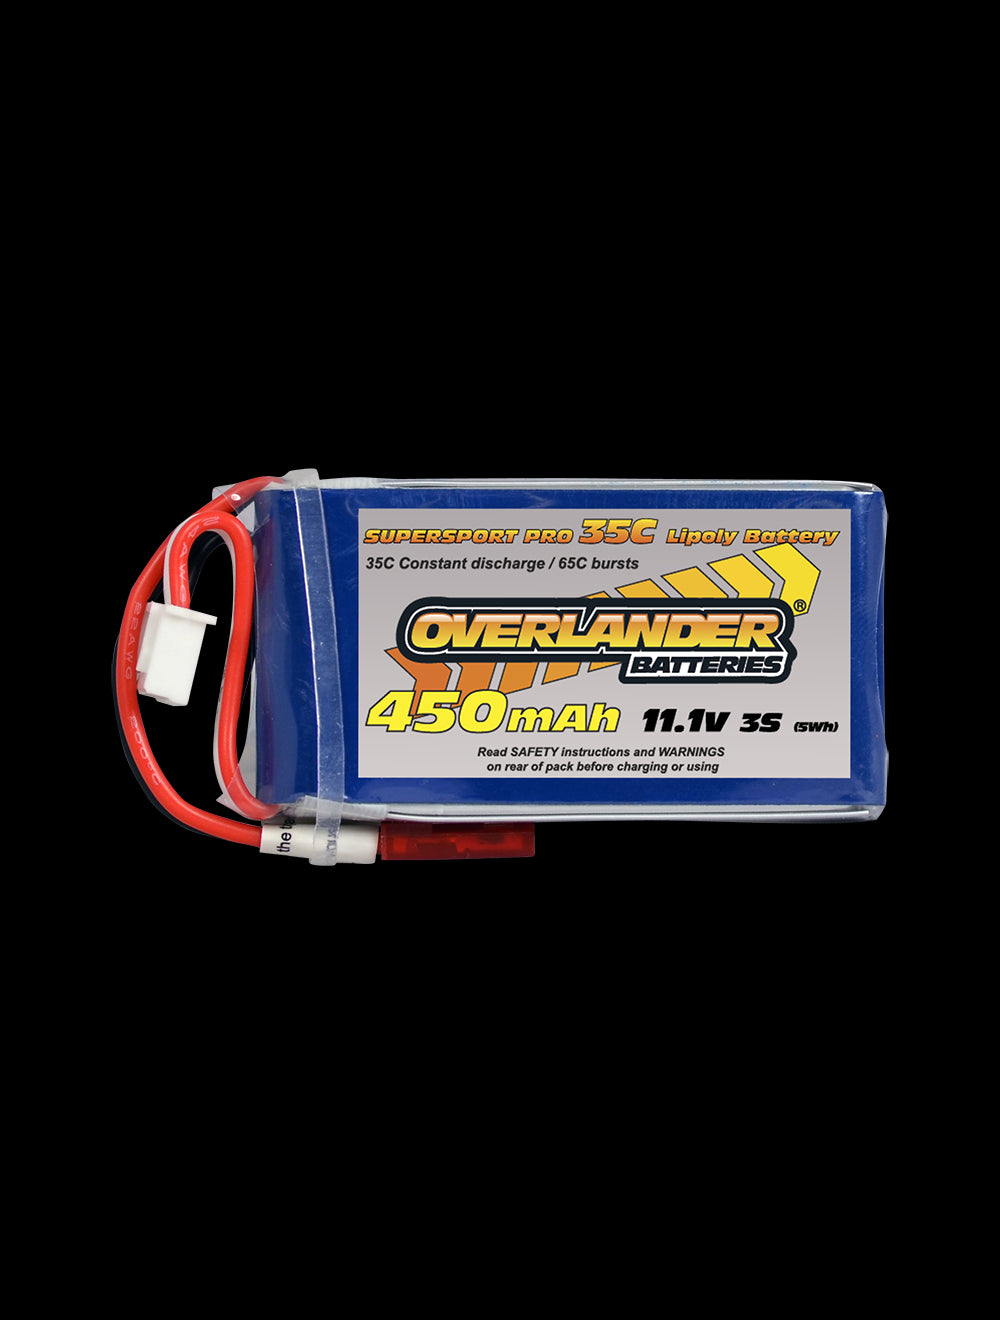 Overlander 450mAh 11.1V 3S 35C Supersport Pro LiPo Battery - JST BEC Connector 2557